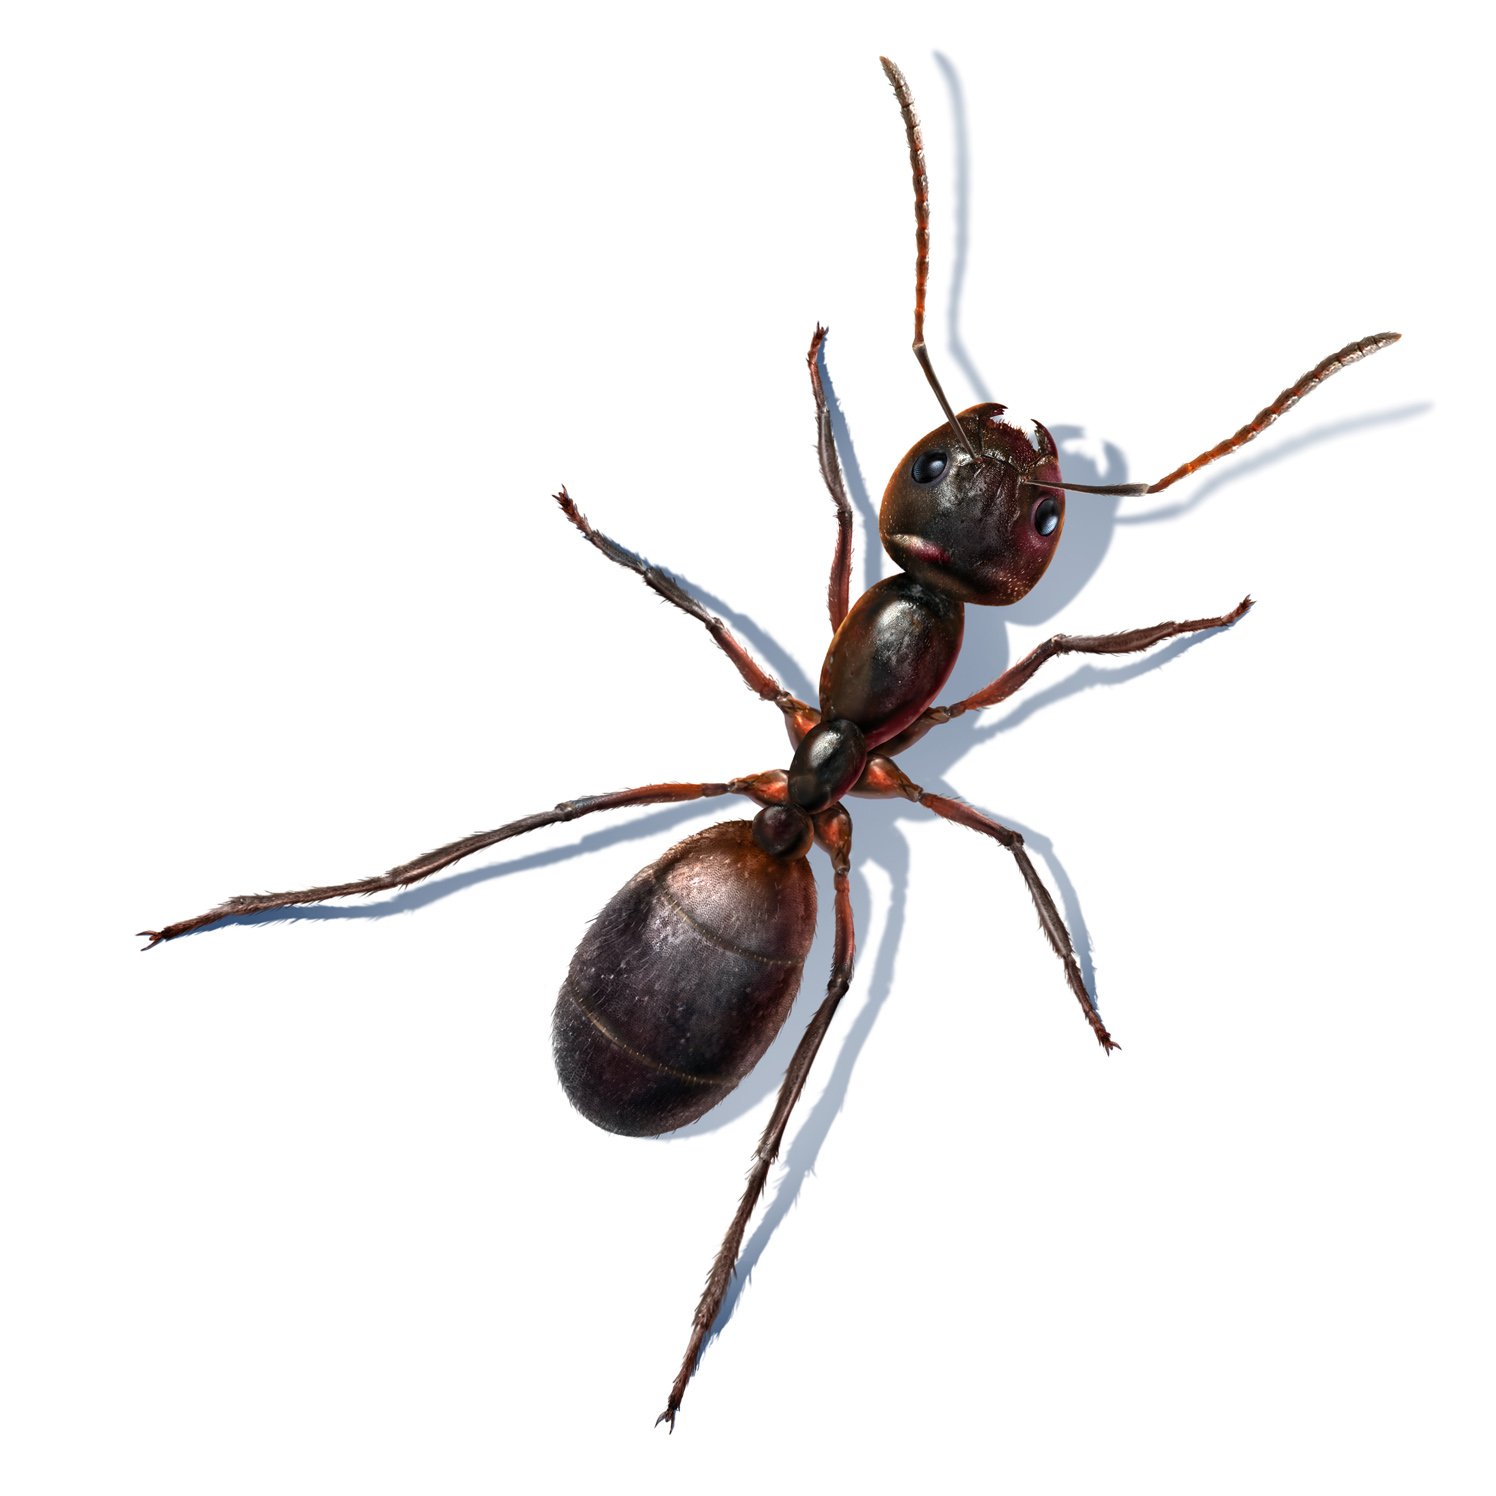 Jeff's Ant